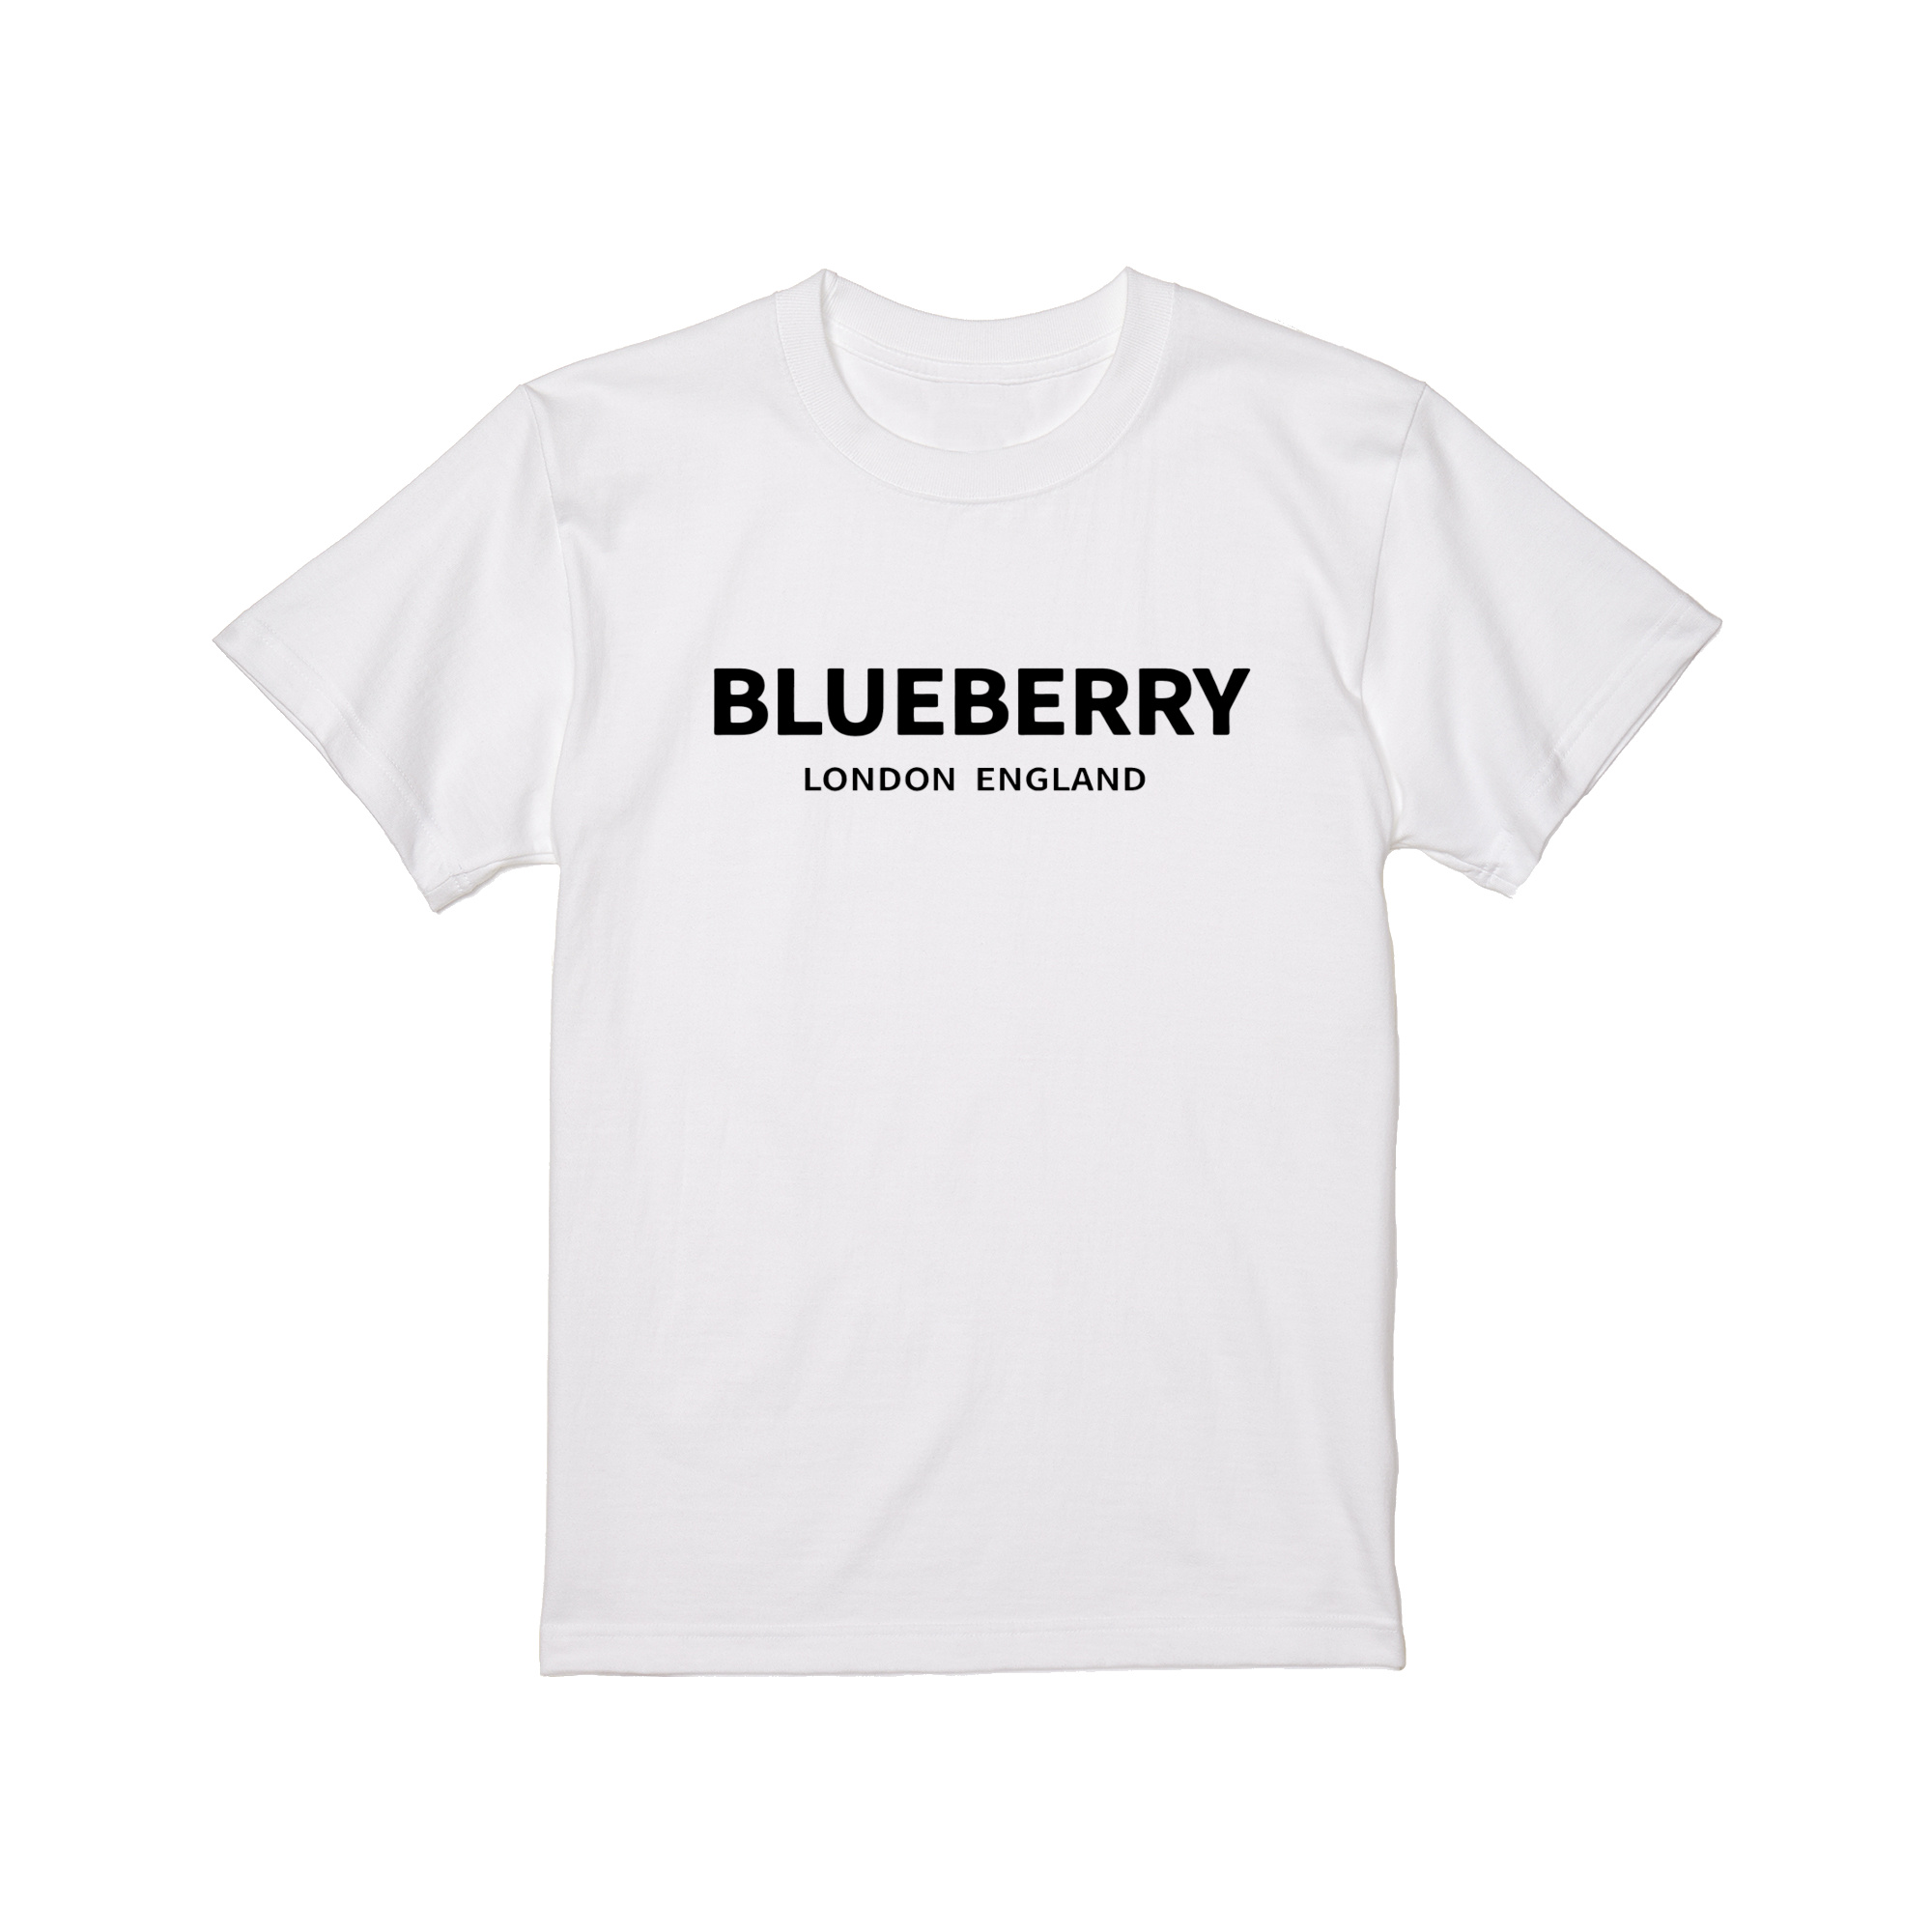 BLUEBERRY Tシャツ 白 黒 ギャグ ネタ ウケ狙い パロディ おもしろ プリント ストリー...